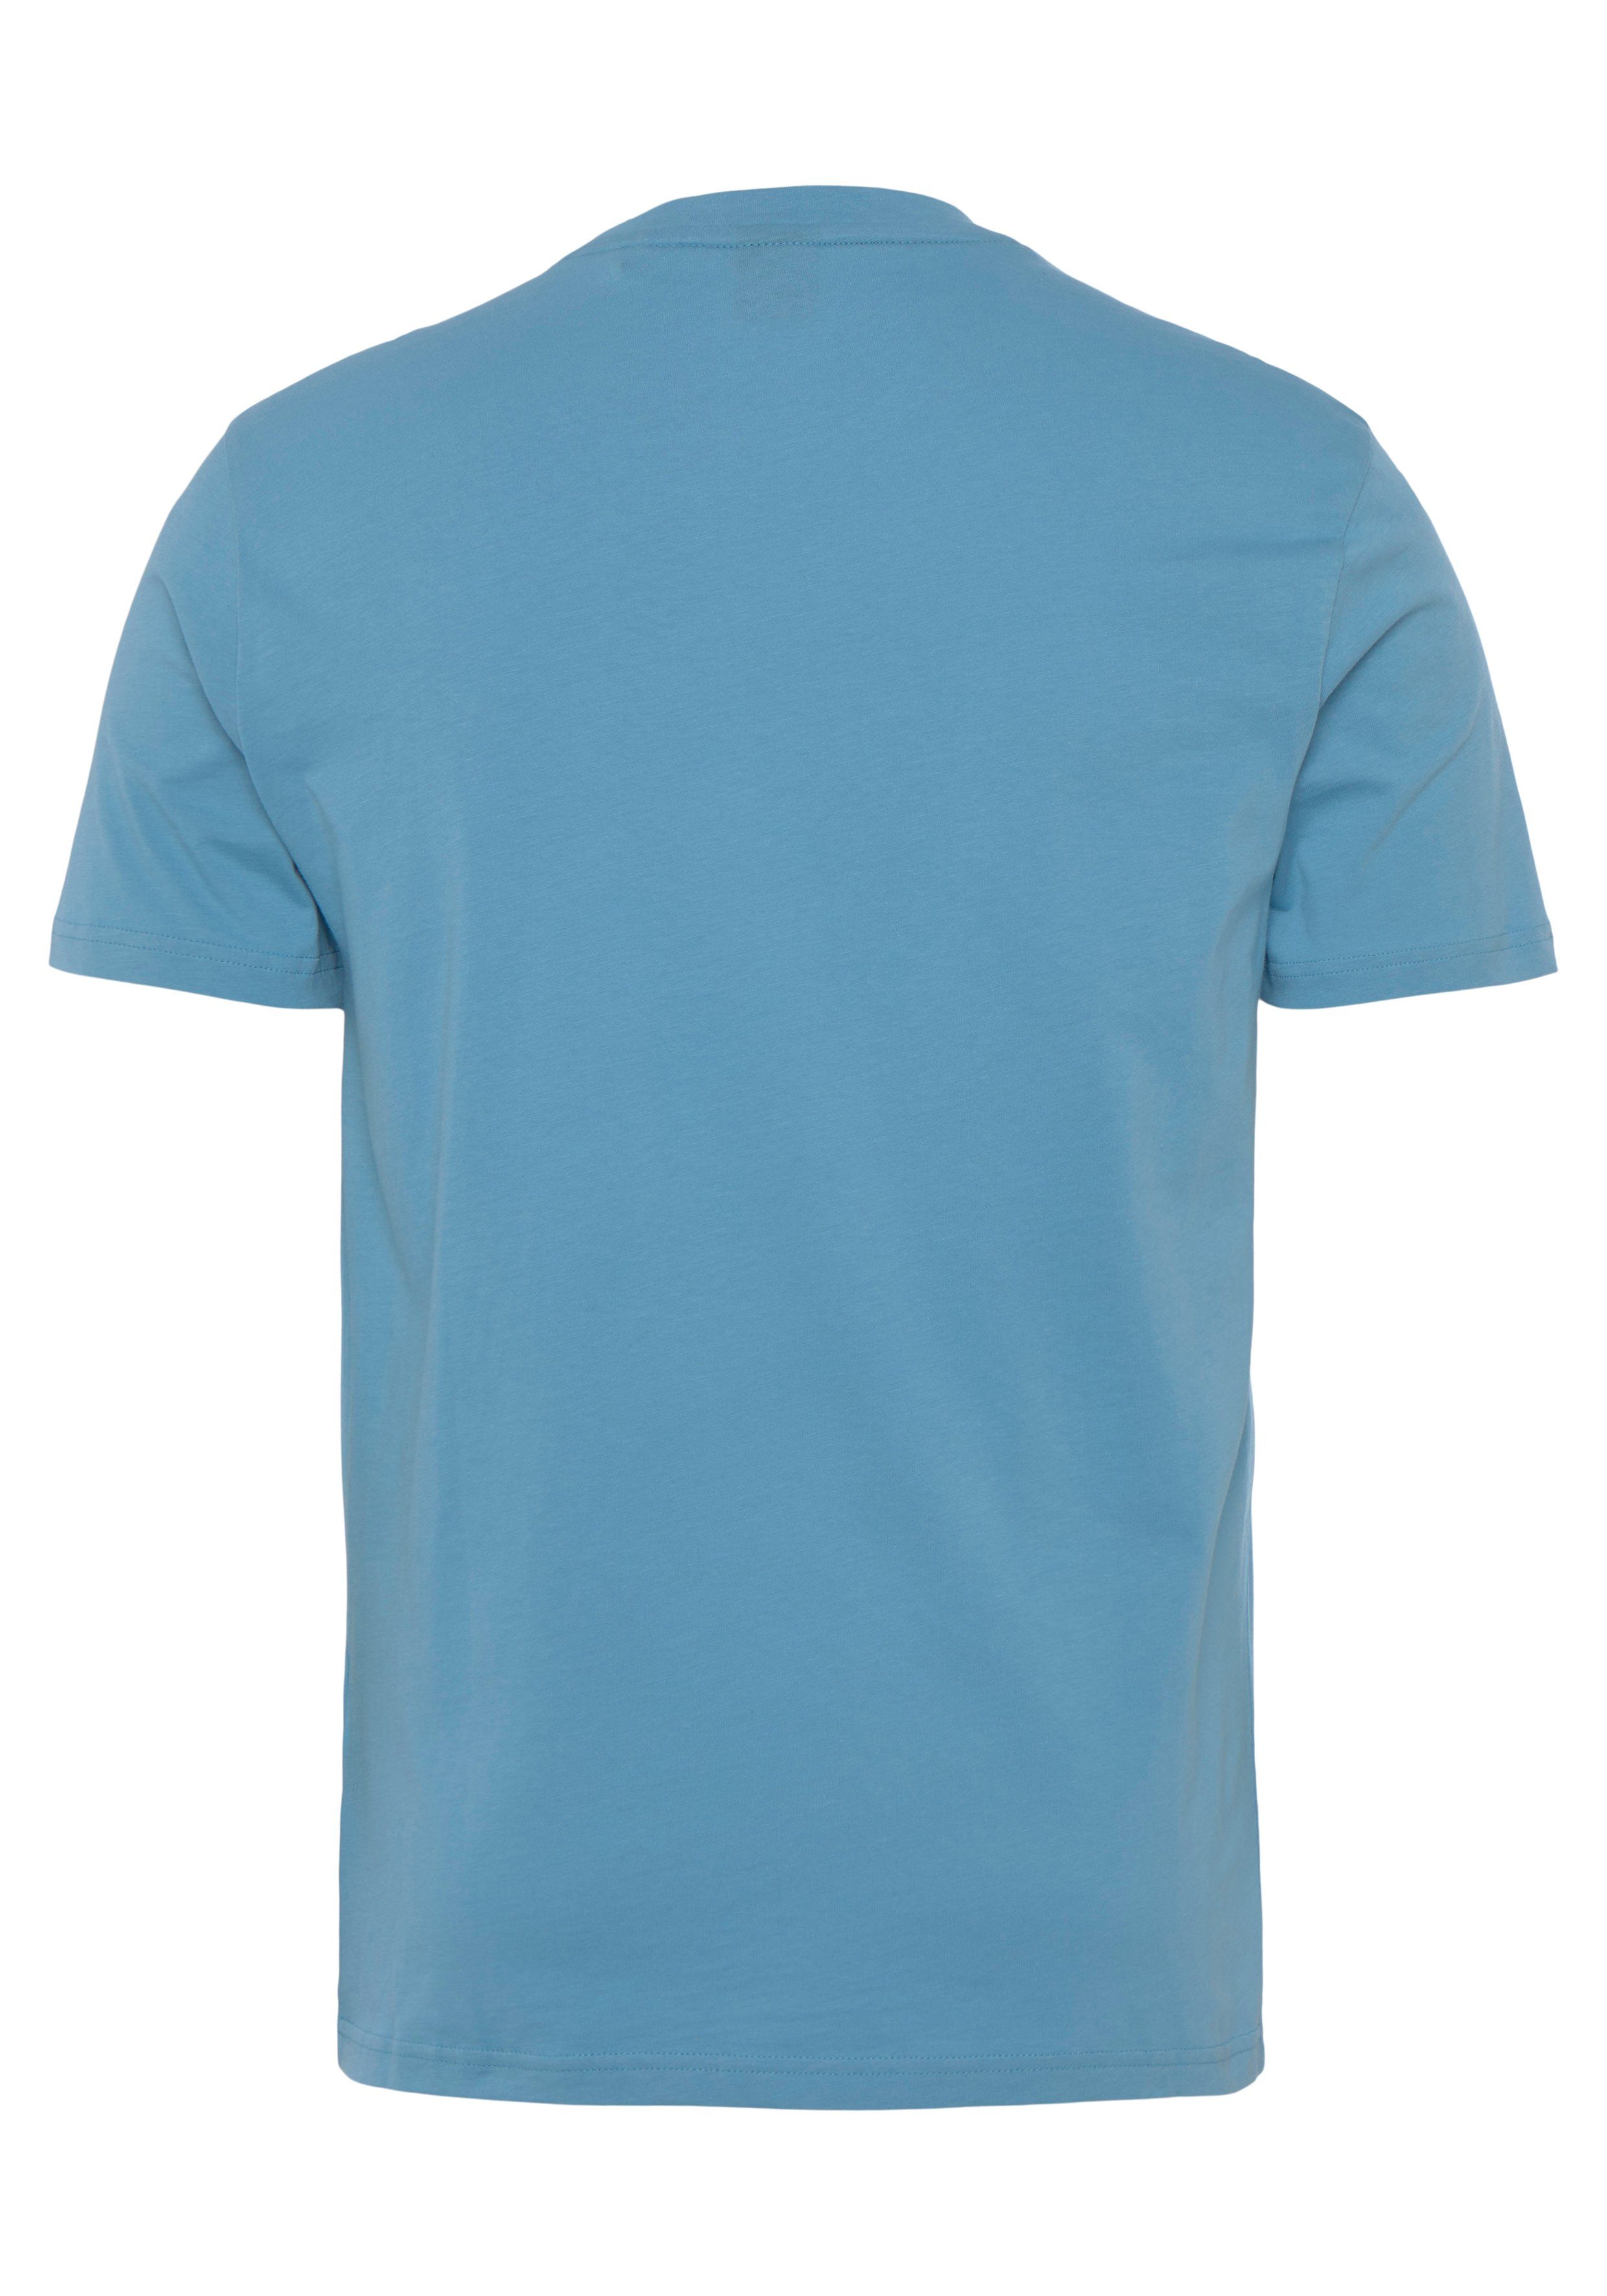 BOSS ORANGE T-Shirt Thinking 1 493 Open Druck 01 10246016 großem Brust auf der BOSS mit Blue